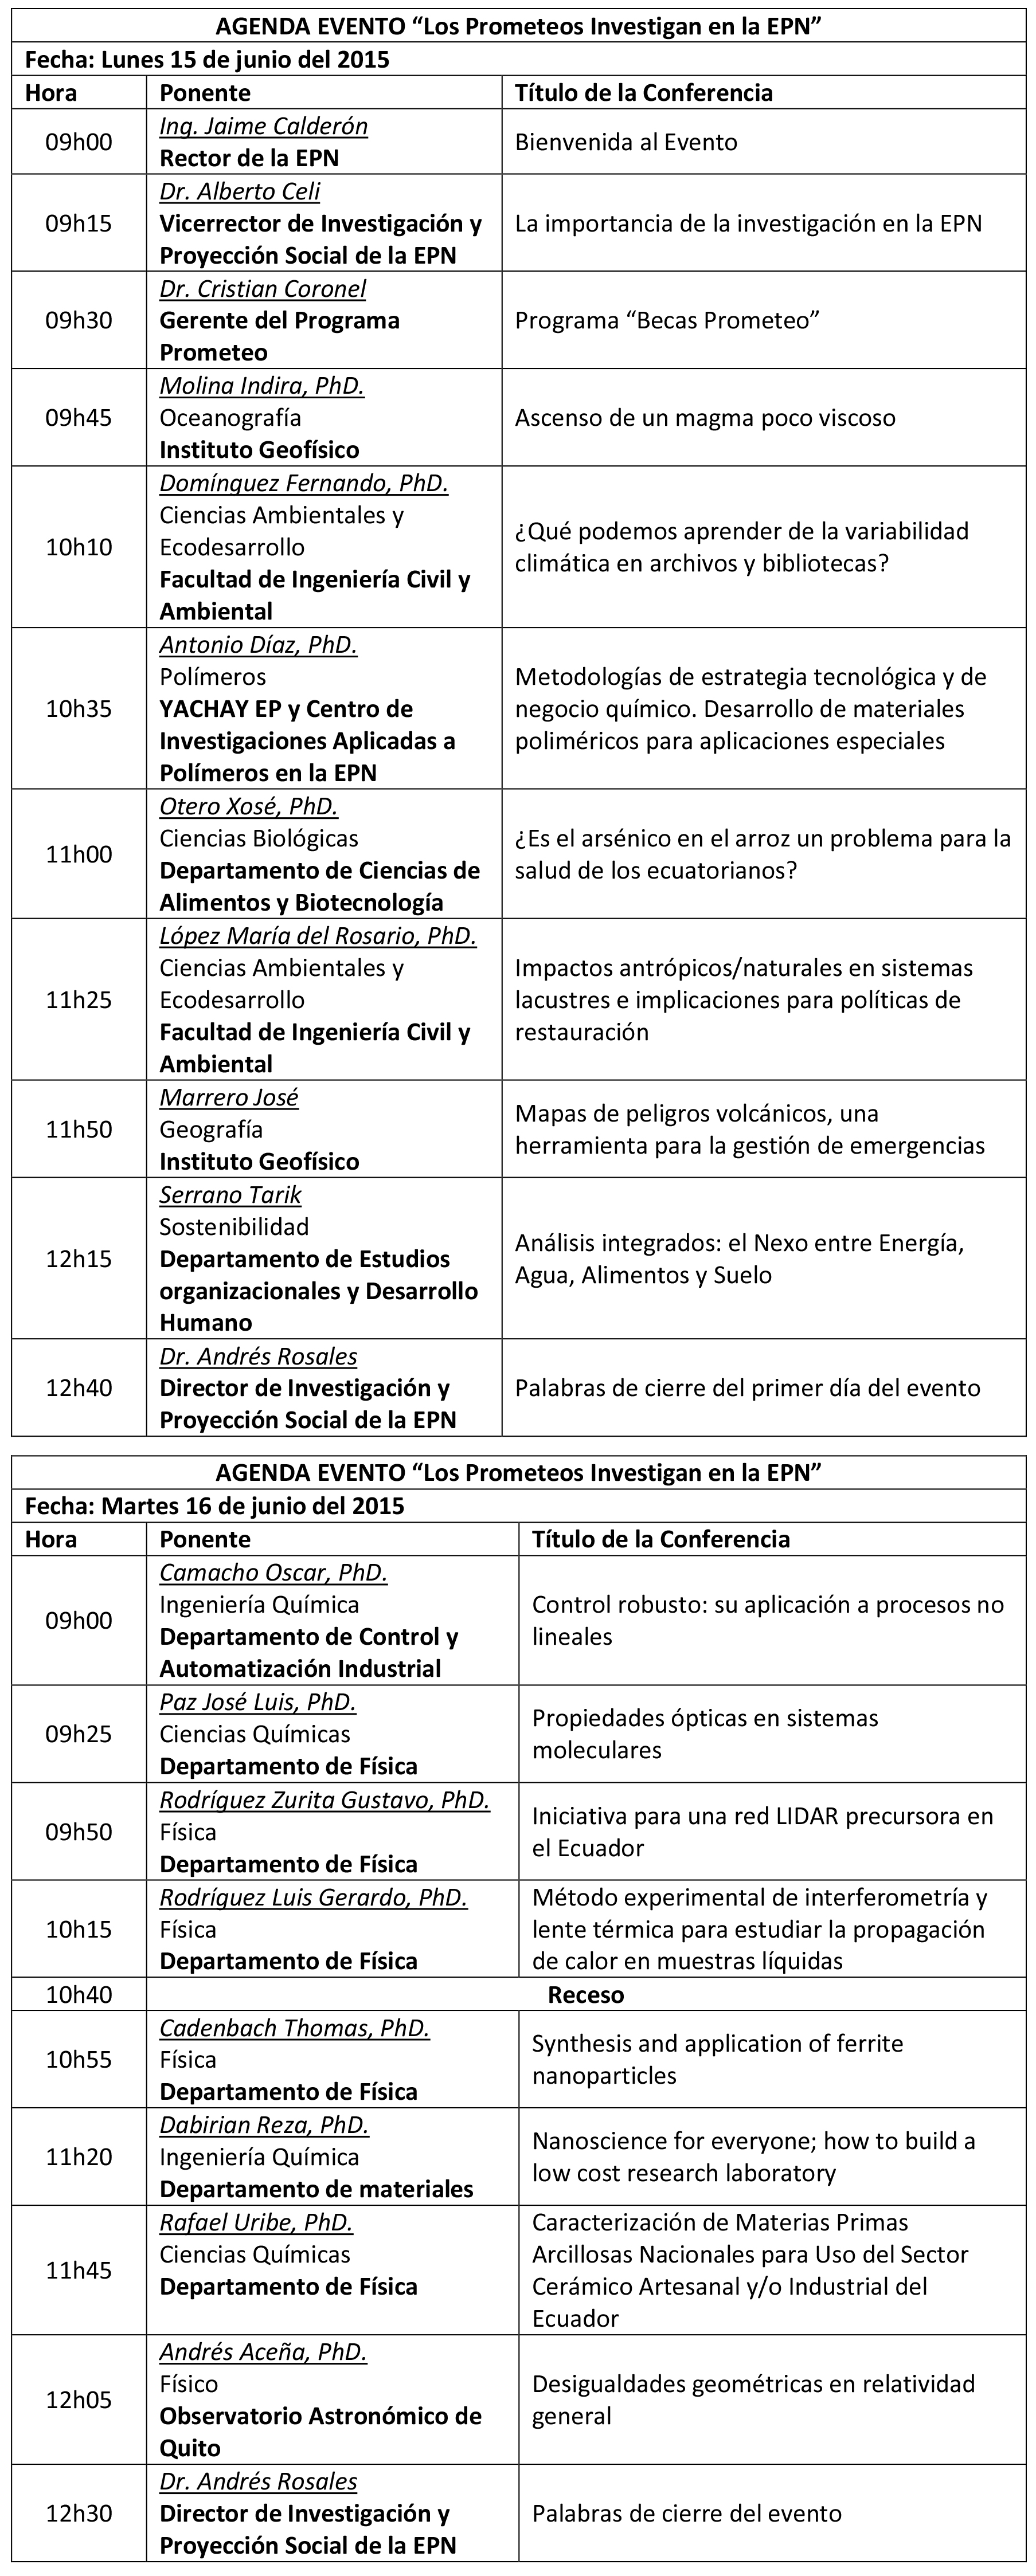 Agenda-evento-Los-Prometeos-investigan-con-la-EPN-15-y-16-junio-2015-1